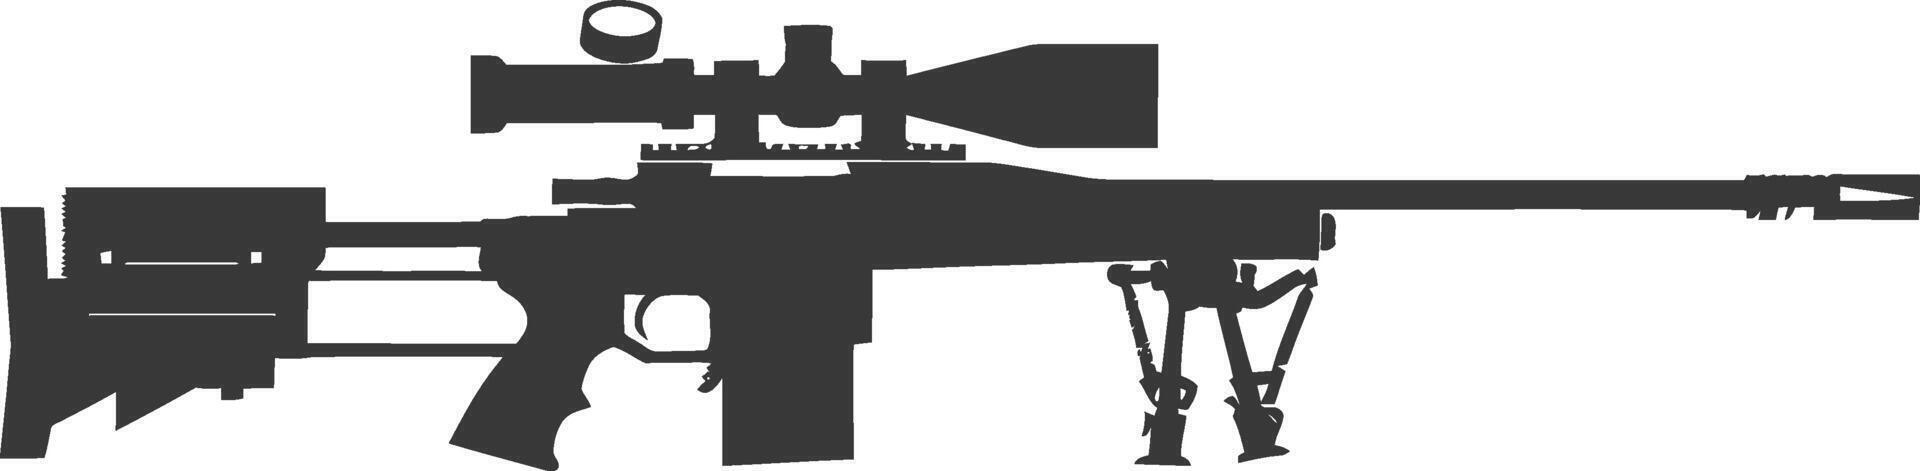 silueta francotirador rifle pistola militar arma negro color solamente vector